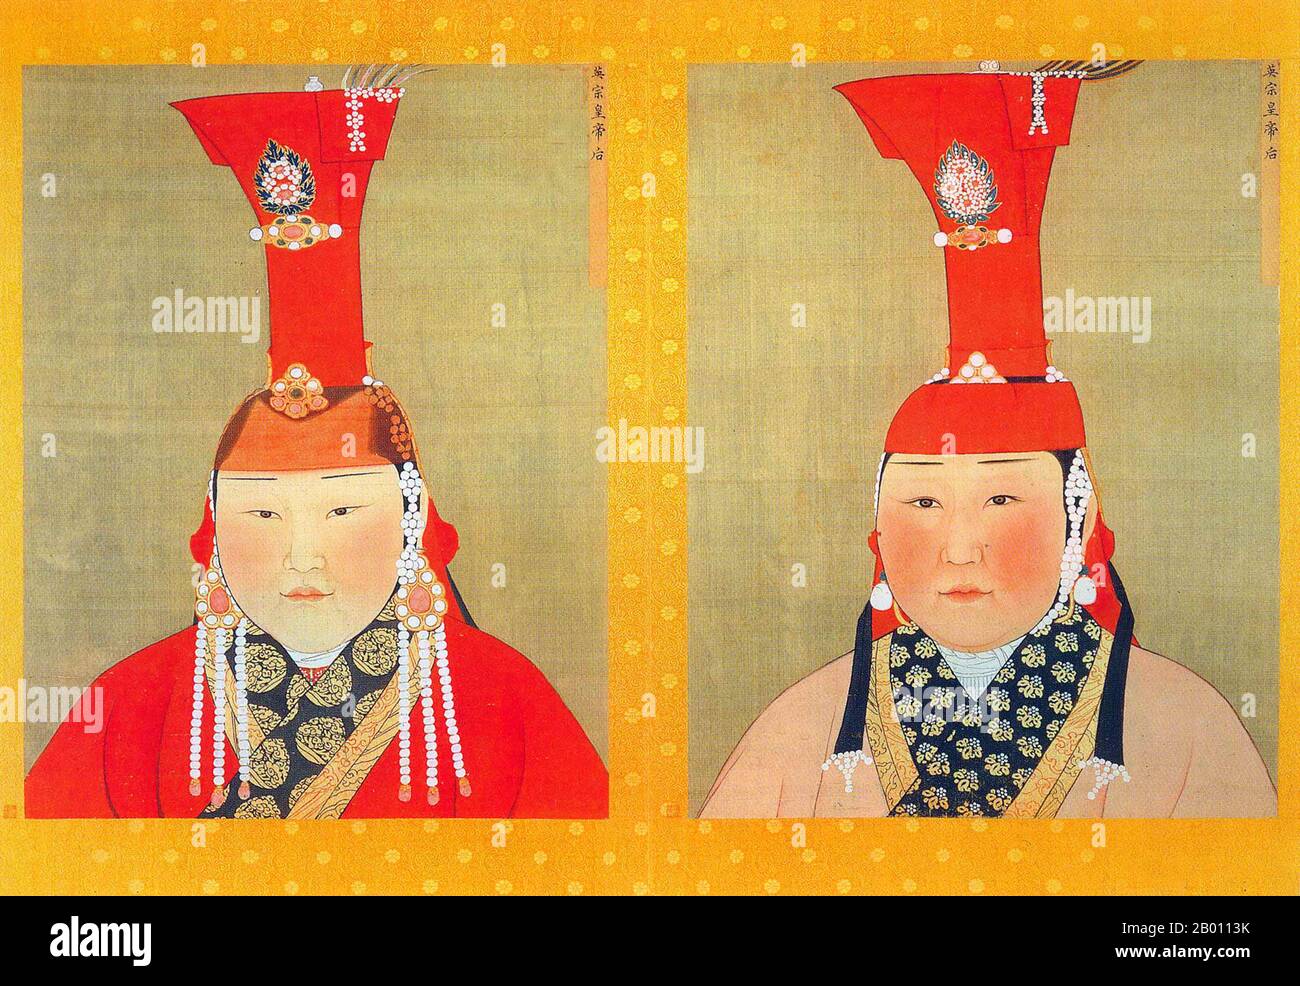 Mongolia/Cina: Due mogli senza nome di Gegeen Khan (imperatore Yingzong). Pittura e inchiostro su ritratti album di seta, 14 ° secolo. Khatun (Persiano; Turco: Hatun) è un titolo femminile di nobiltà ed equivalente al maschio 'khan' usato prominentemente nel primo Impero Turco e nel successivo Impero Mongolo. Equivale a regina o imperatrice. Foto Stock